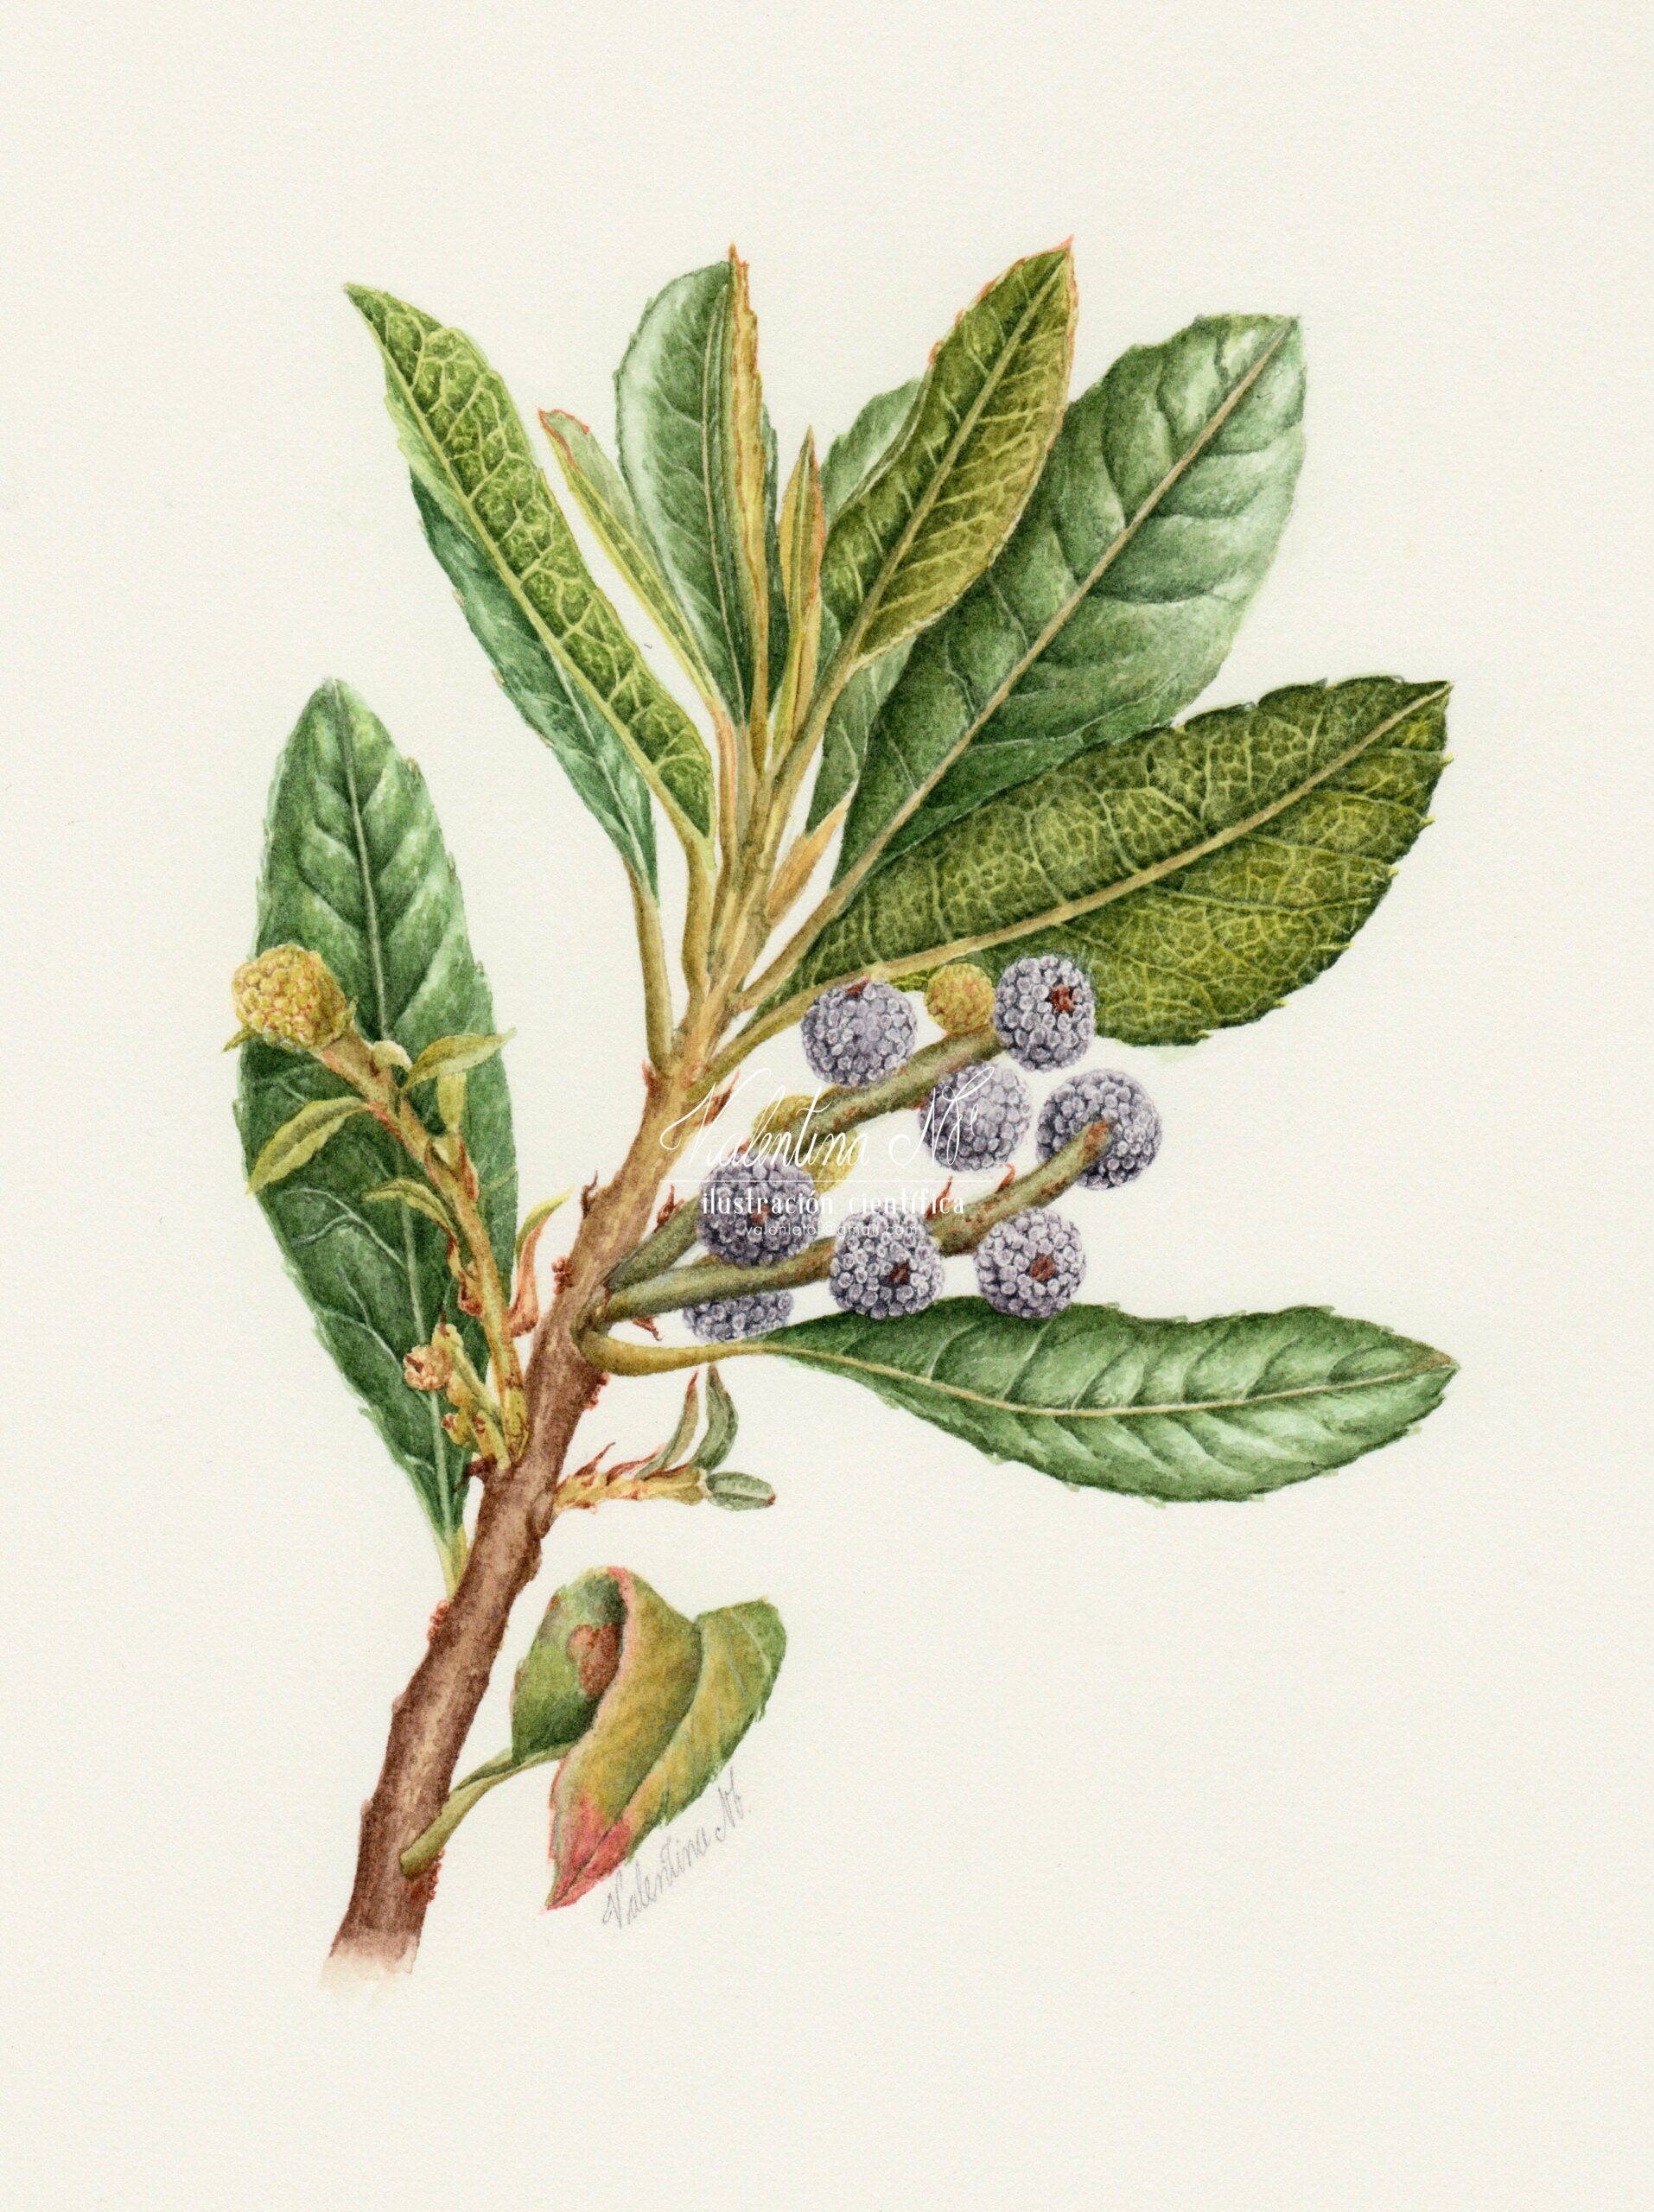 Morella pubescens